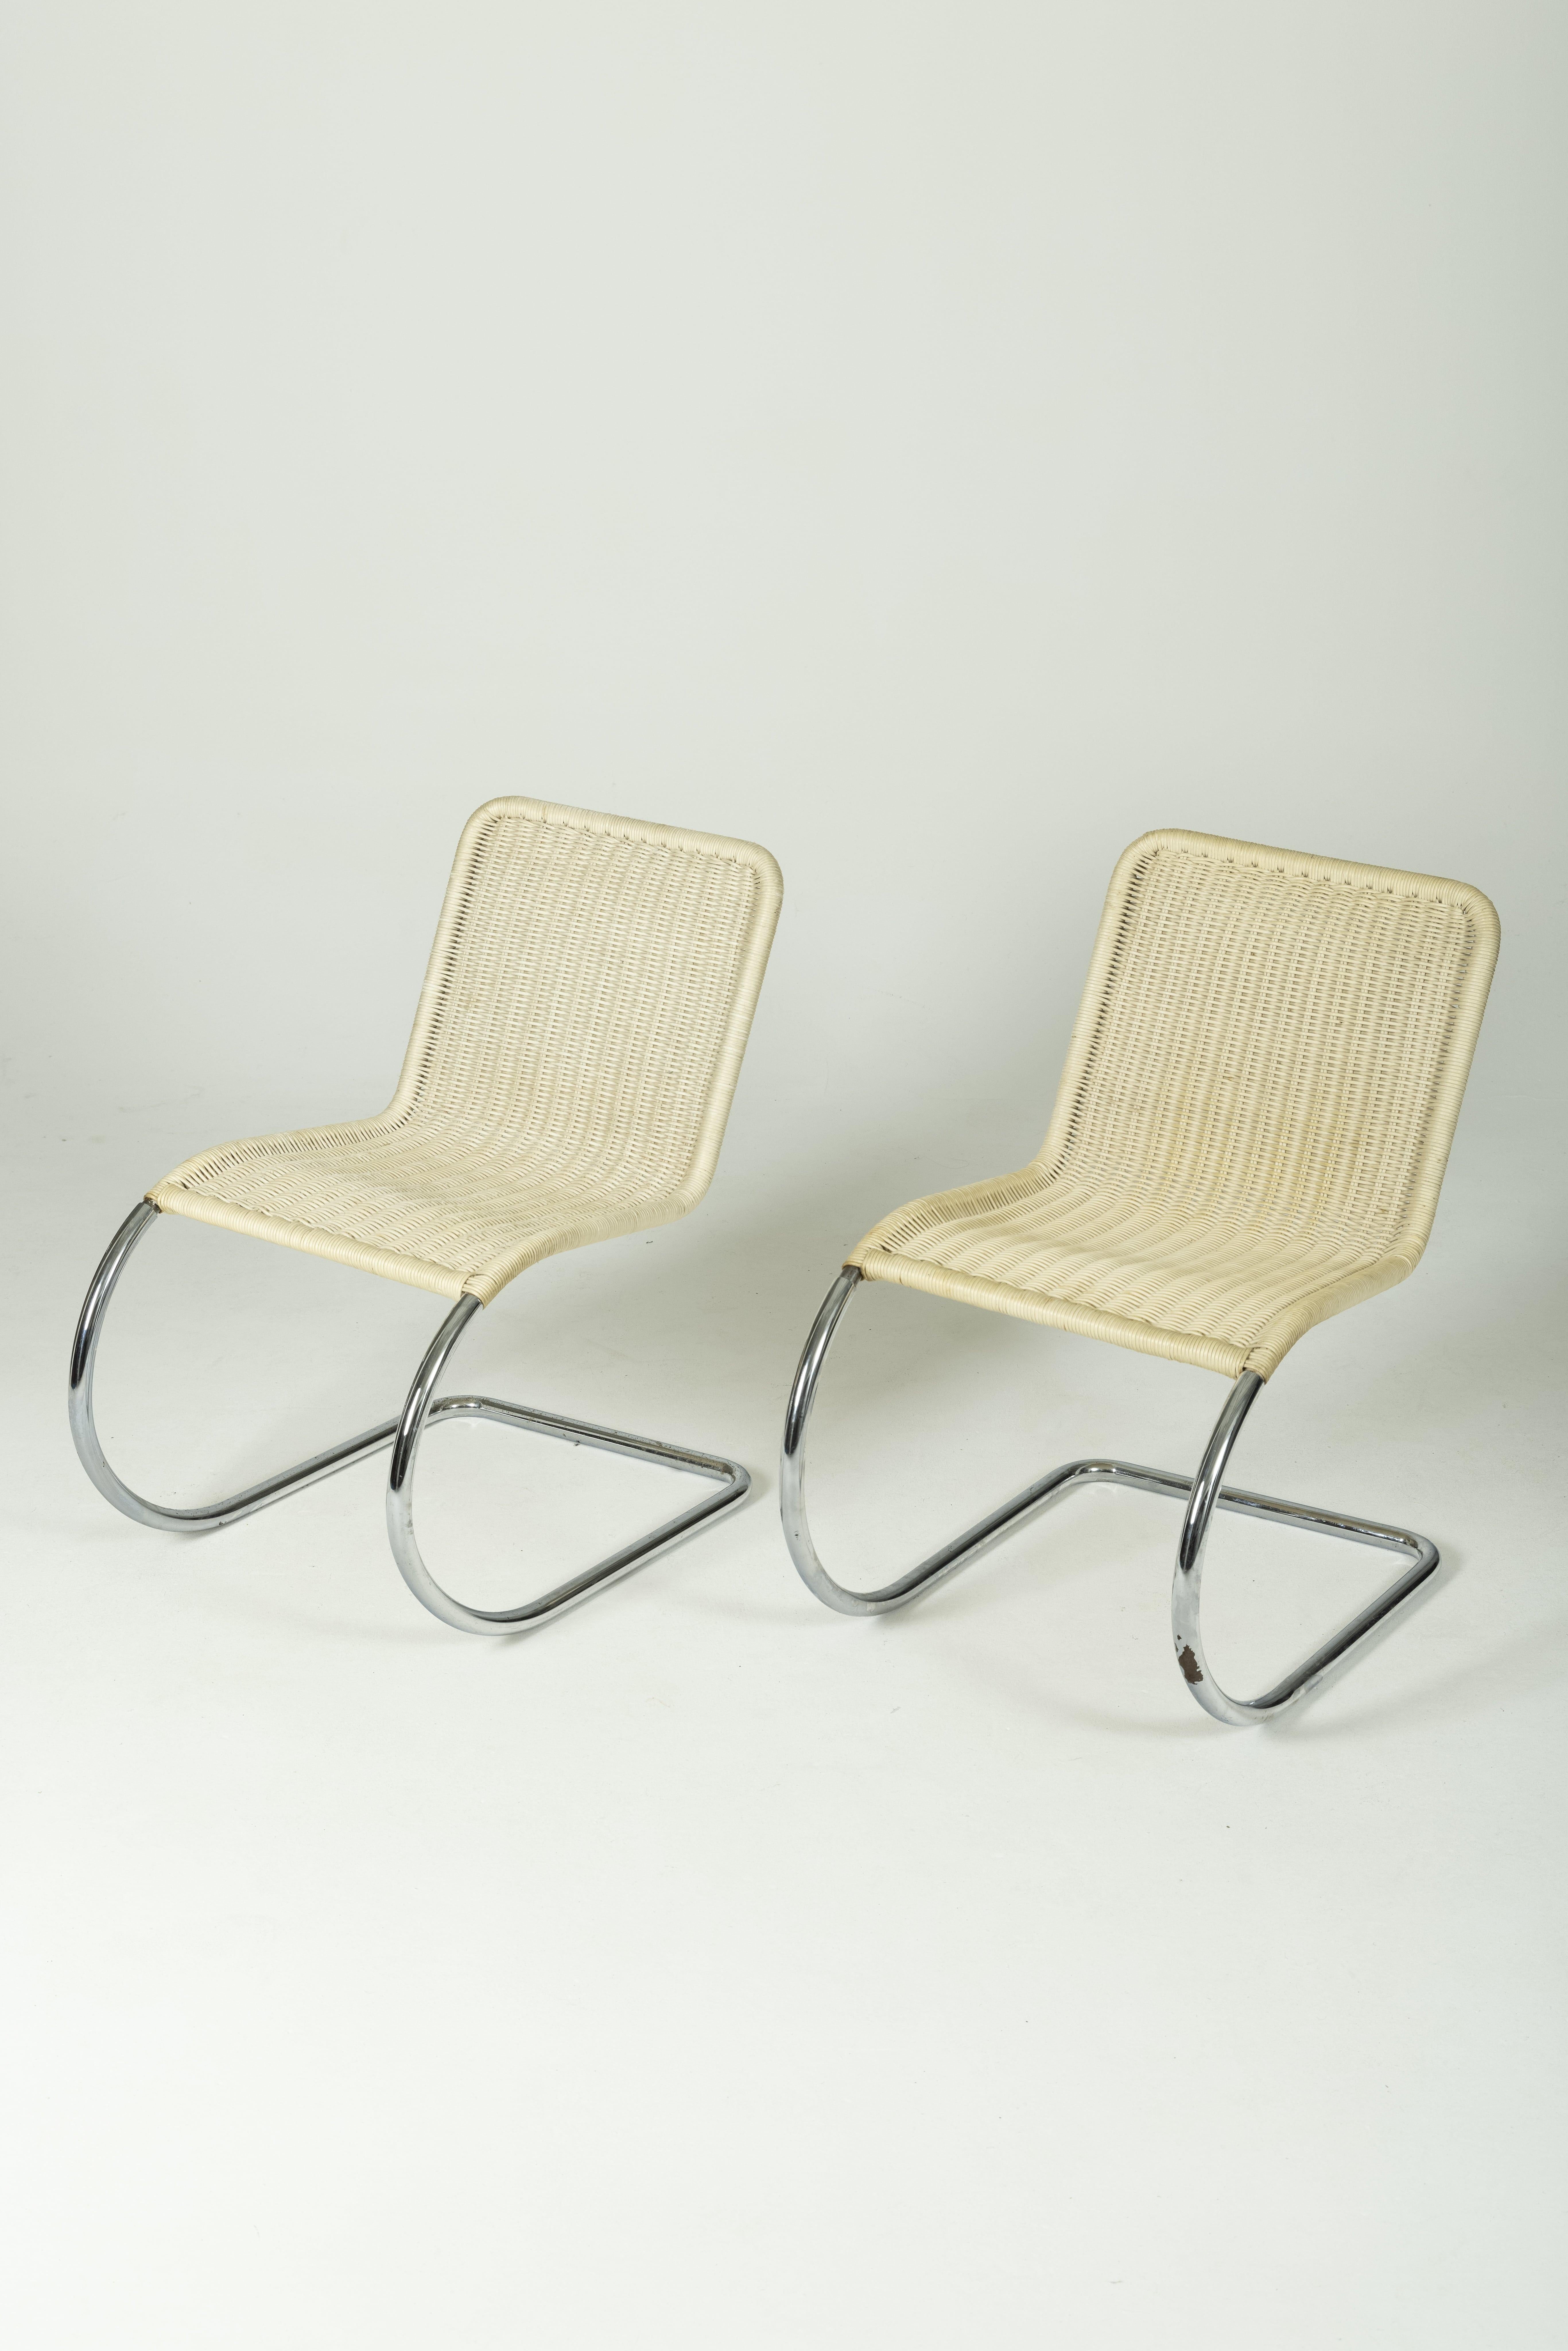 Stuhl MR10 des Designers Ludwig Mies Van der Rohe aus den 1930er Jahren. Freitragender, flexibler Rahmen, verchromtes Stahlrohr und beiger Rohrsitz. Leichte Gebrauchsspuren. Zwei Stühle verfügbar.
LP875-876